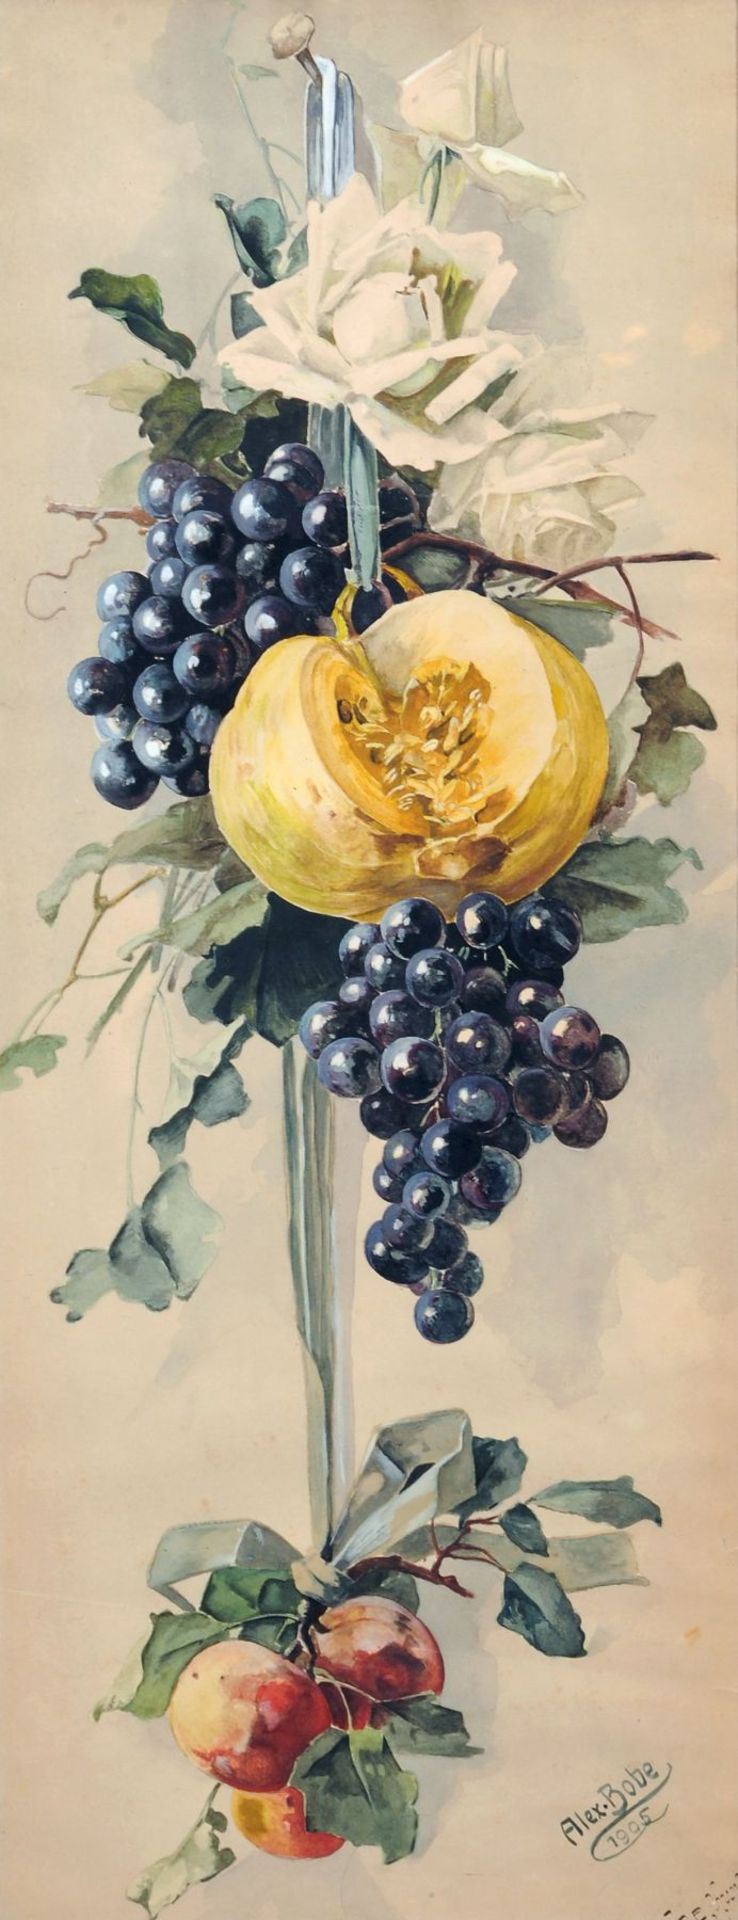 Otto Alexander Bobe, Fruchtgehänge mit weißen Rosen, Kürbis, Weinreben und Pfirsichen. 1905.